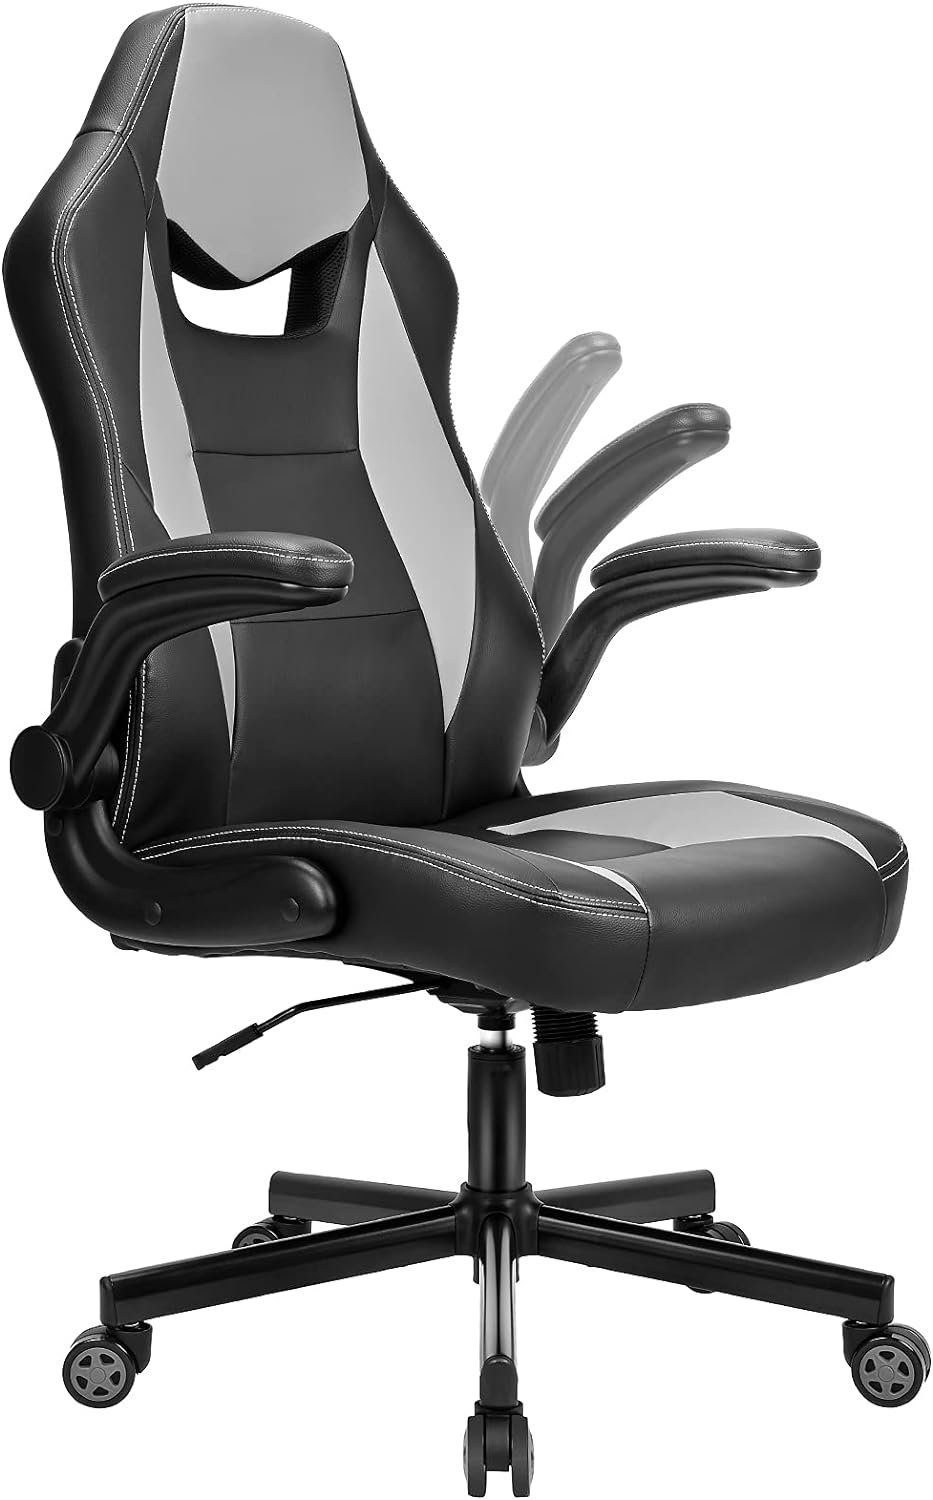 BASETBL Gaming Chair, Stuhl mit großer Sitzfläche ergonomischem Design hochklappbarer